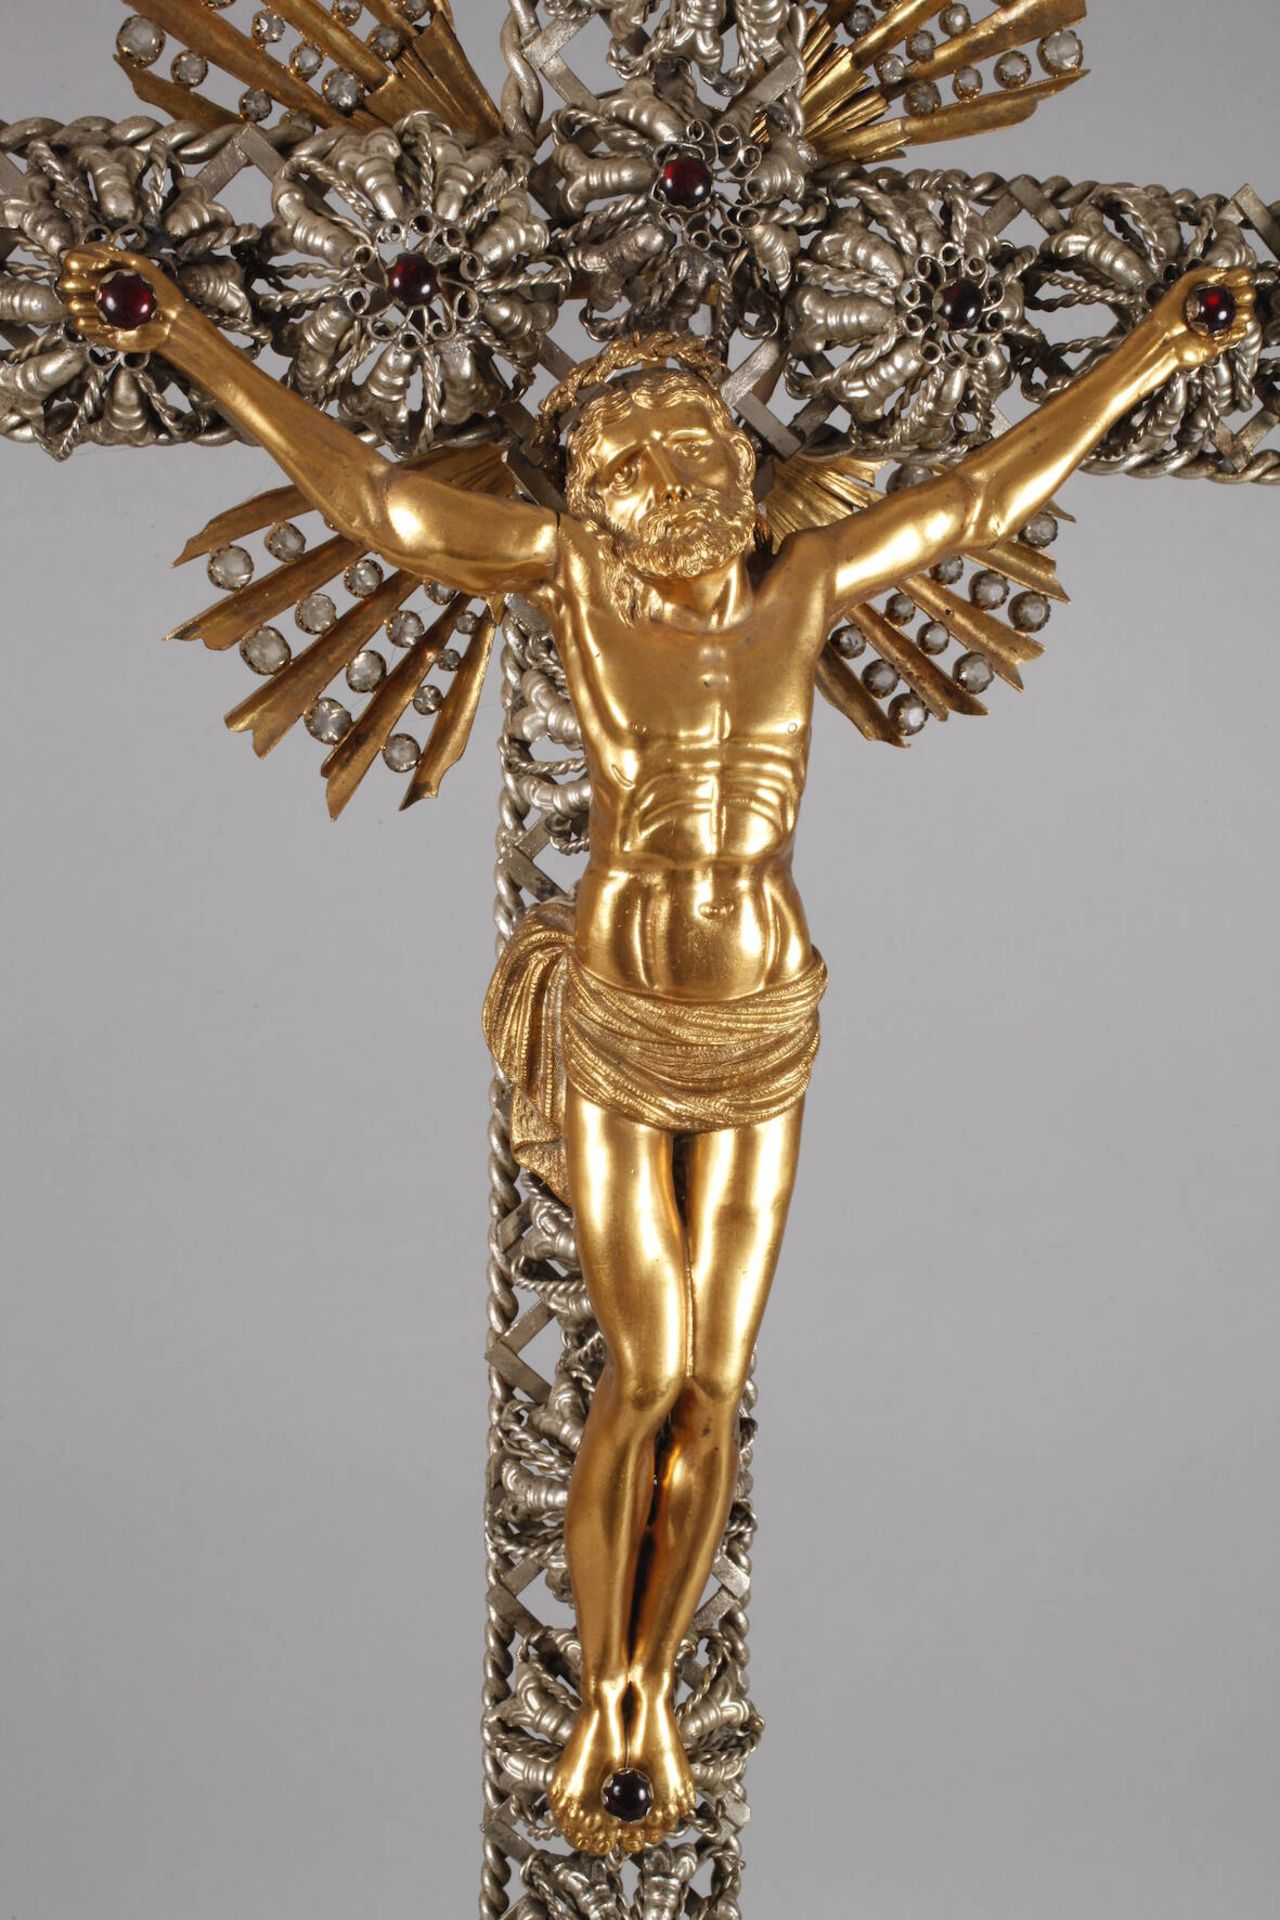 Großes Kruzifix Ende 19. Jh., Klosterarbeit, Messing und Weißmetall, Sockel und Kreuz durchbrochen - Bild 2 aus 7